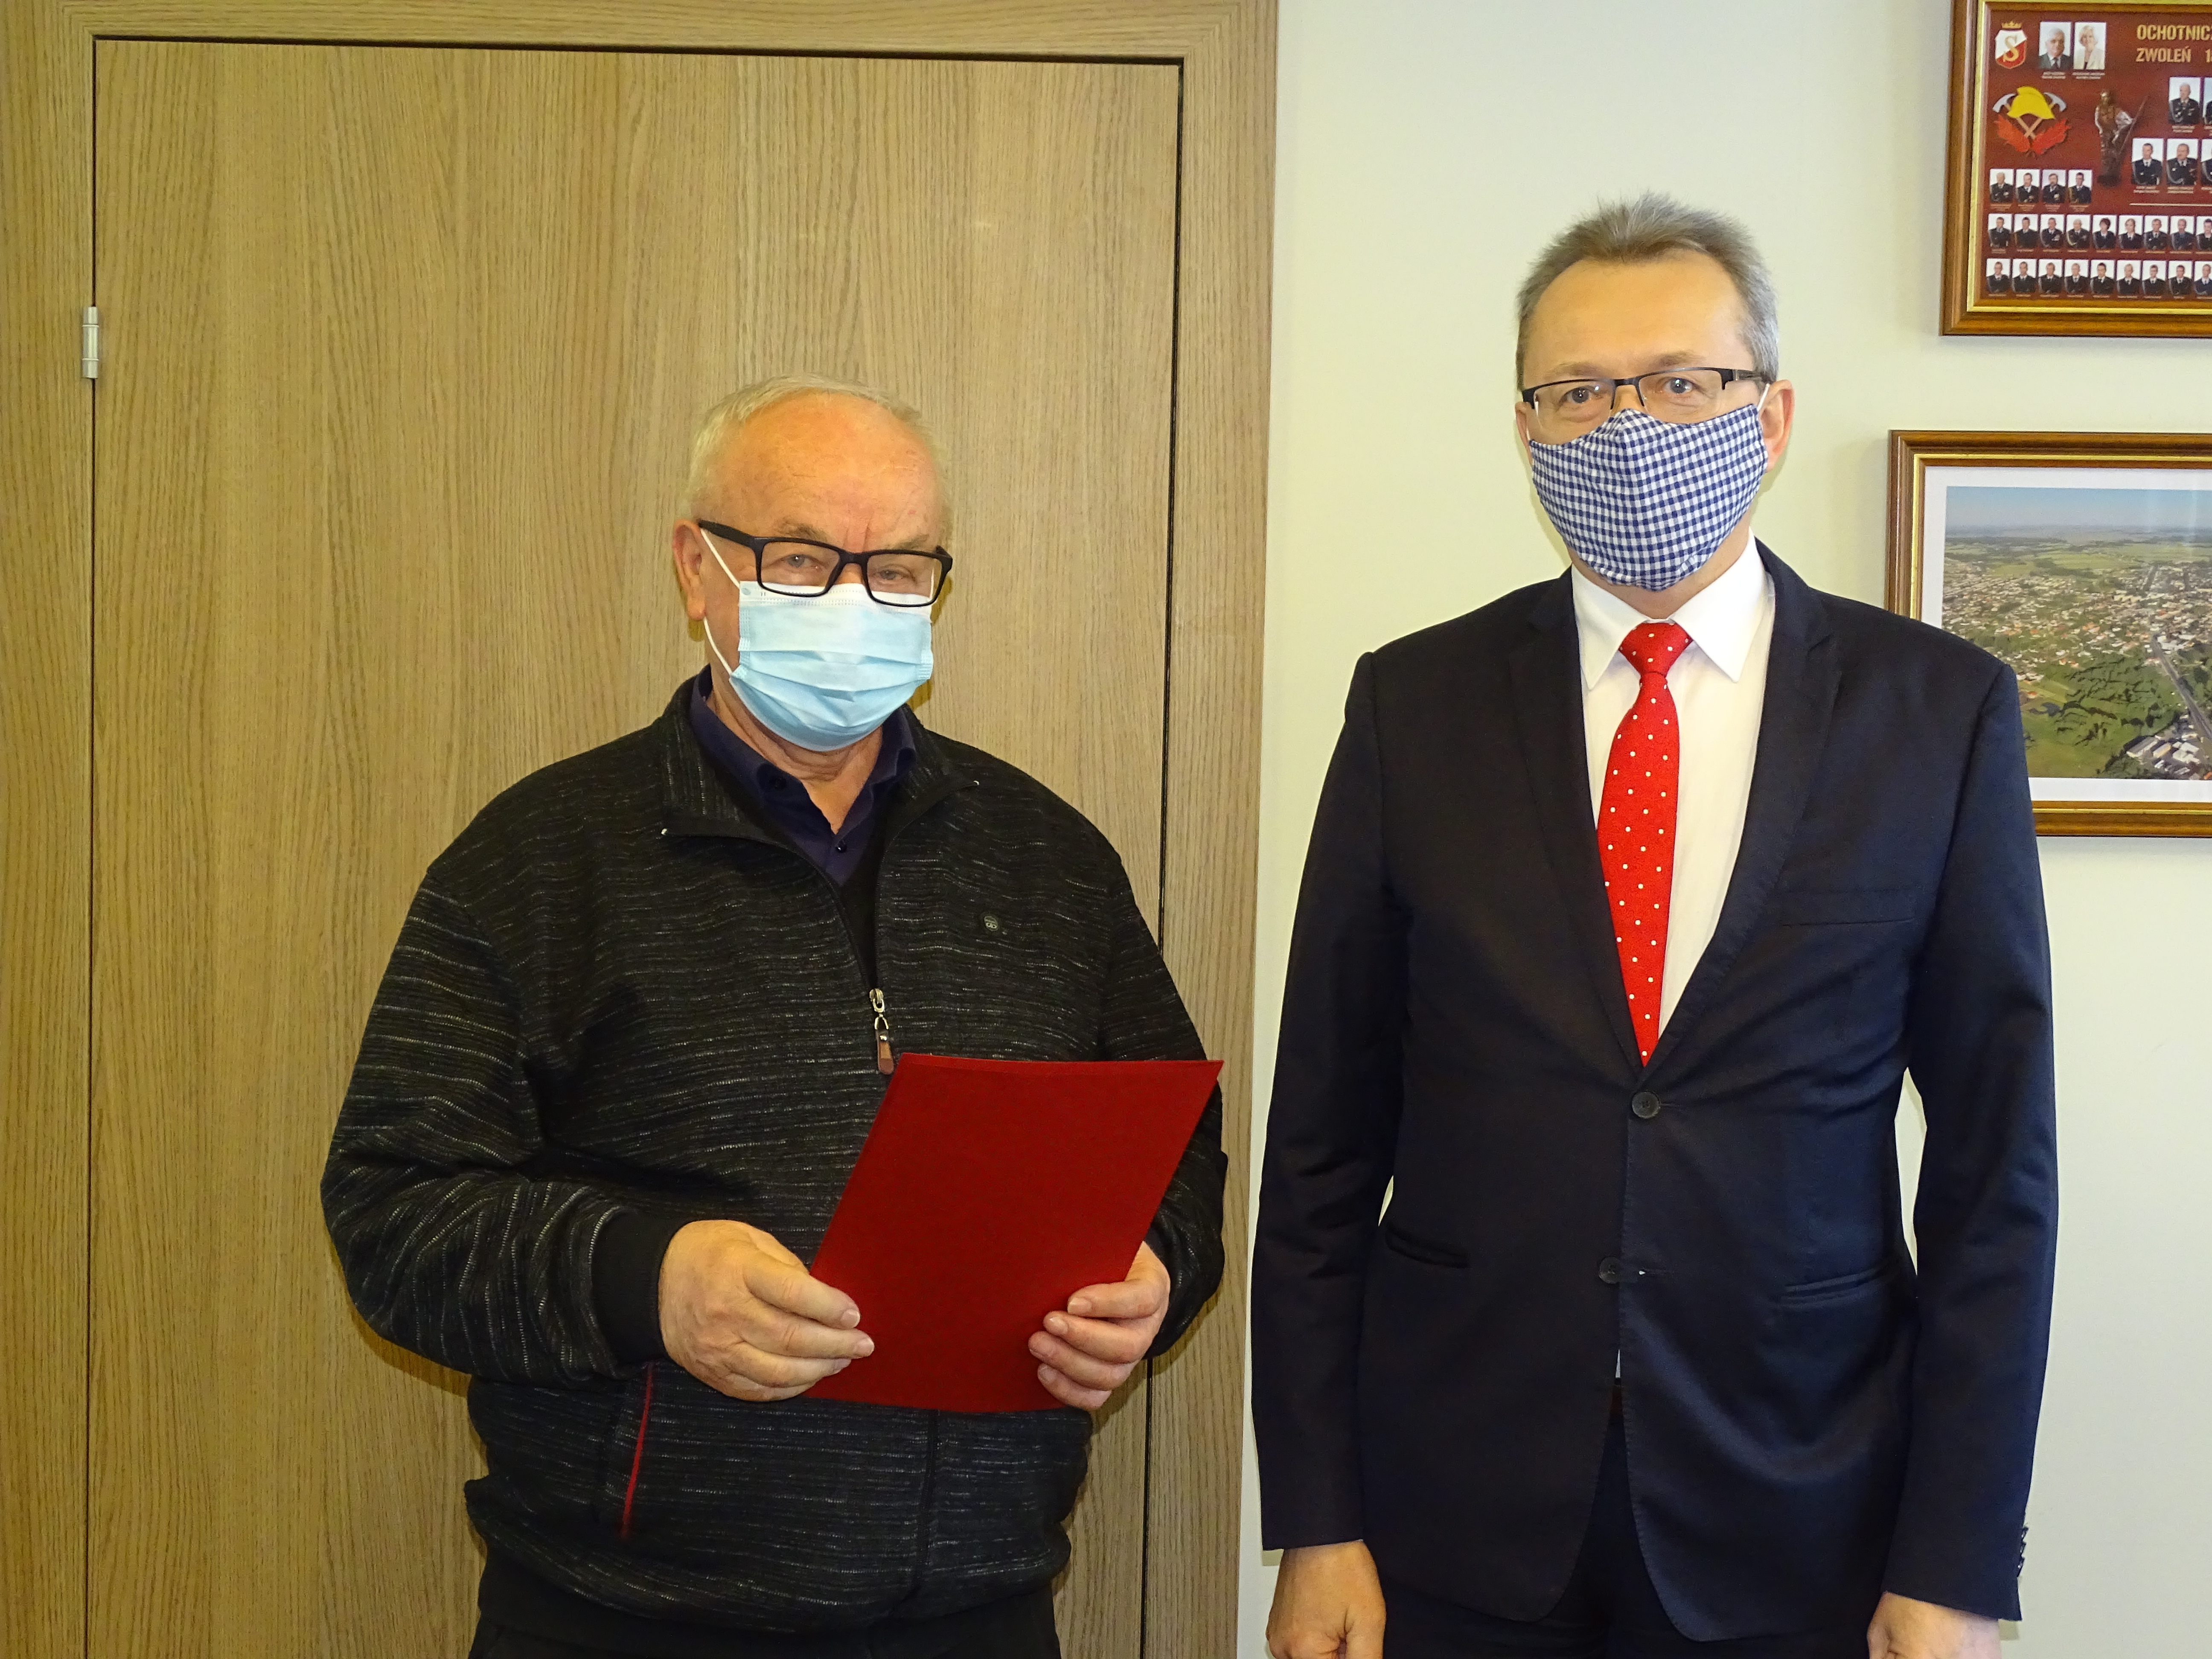 Umowę swoimi podpisami parafrowali: burmistrz Zwolenia Arkadiusz Sulima oraz Prezes Zarządu firmy ANMED Jerzy Pomiotło.